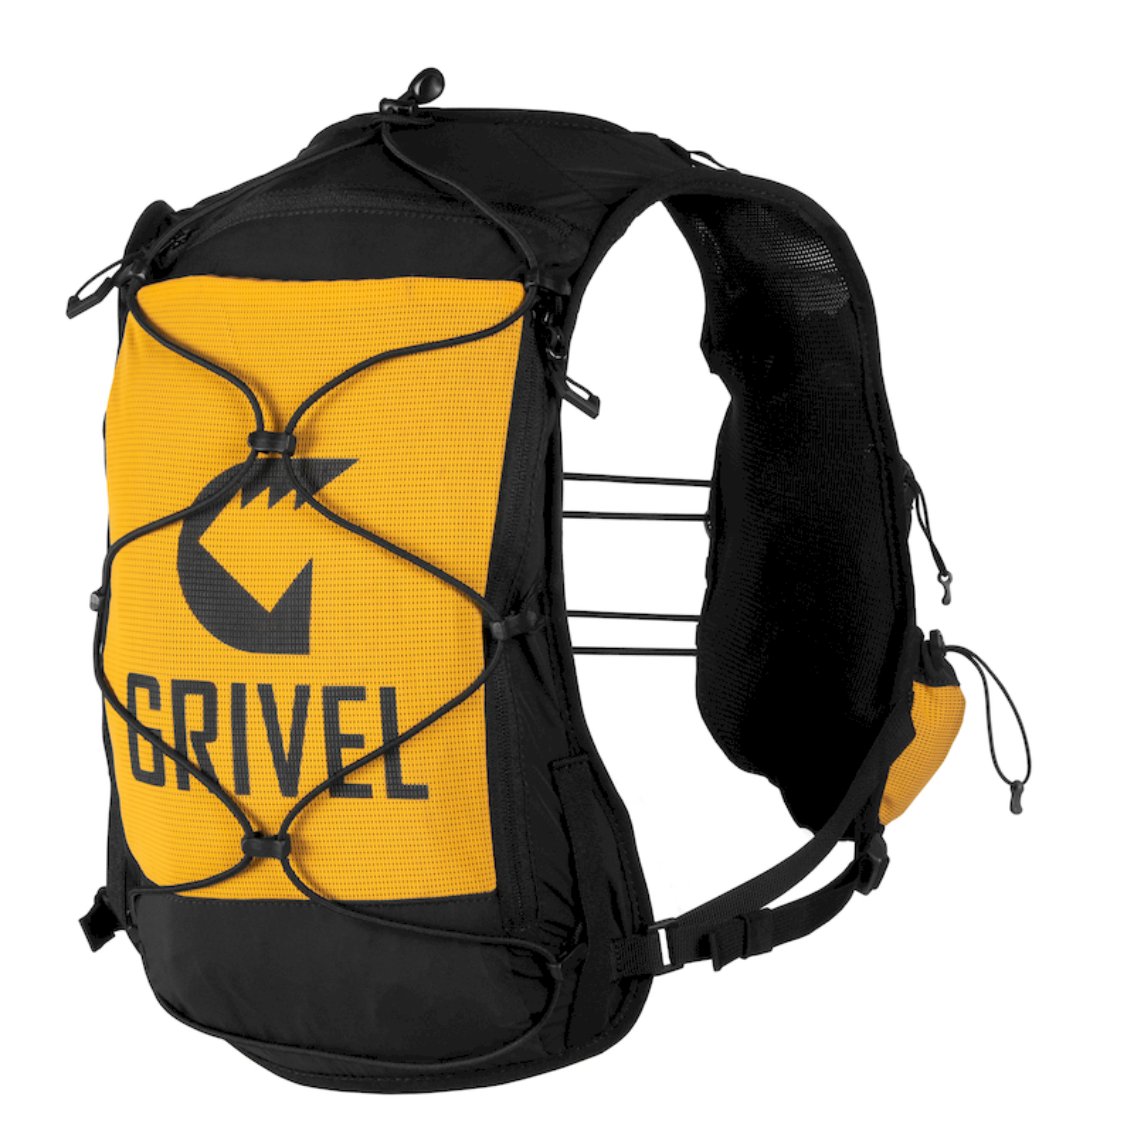 Grivel Mountain Runner Evo 10 - Trail running backpack